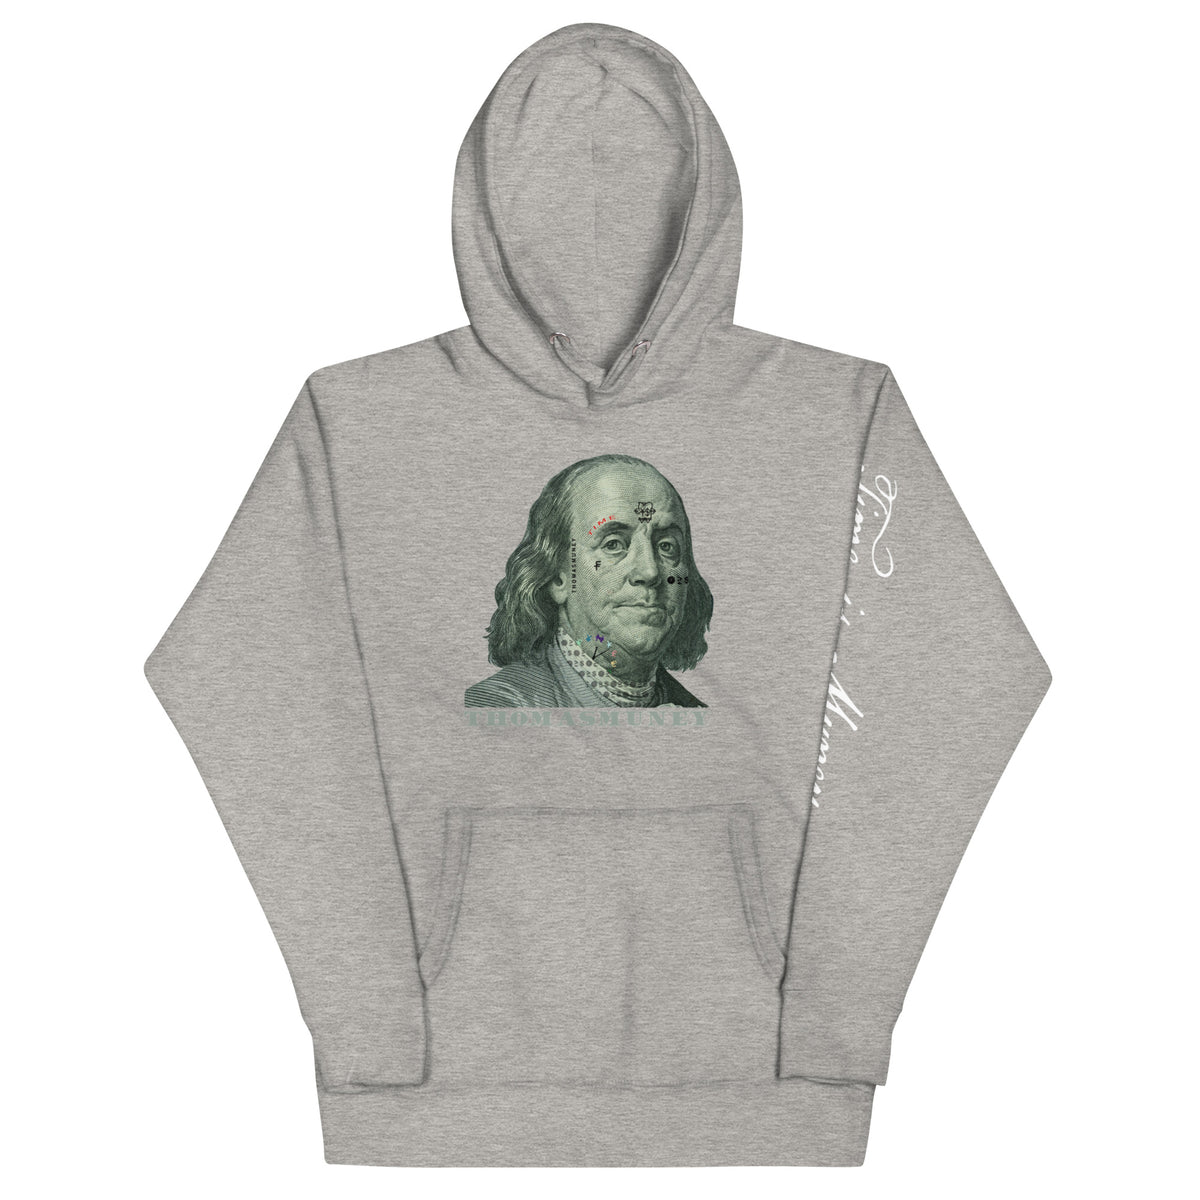  Ben Benjamin Franklin Zip Hoodie : Clothing, Shoes